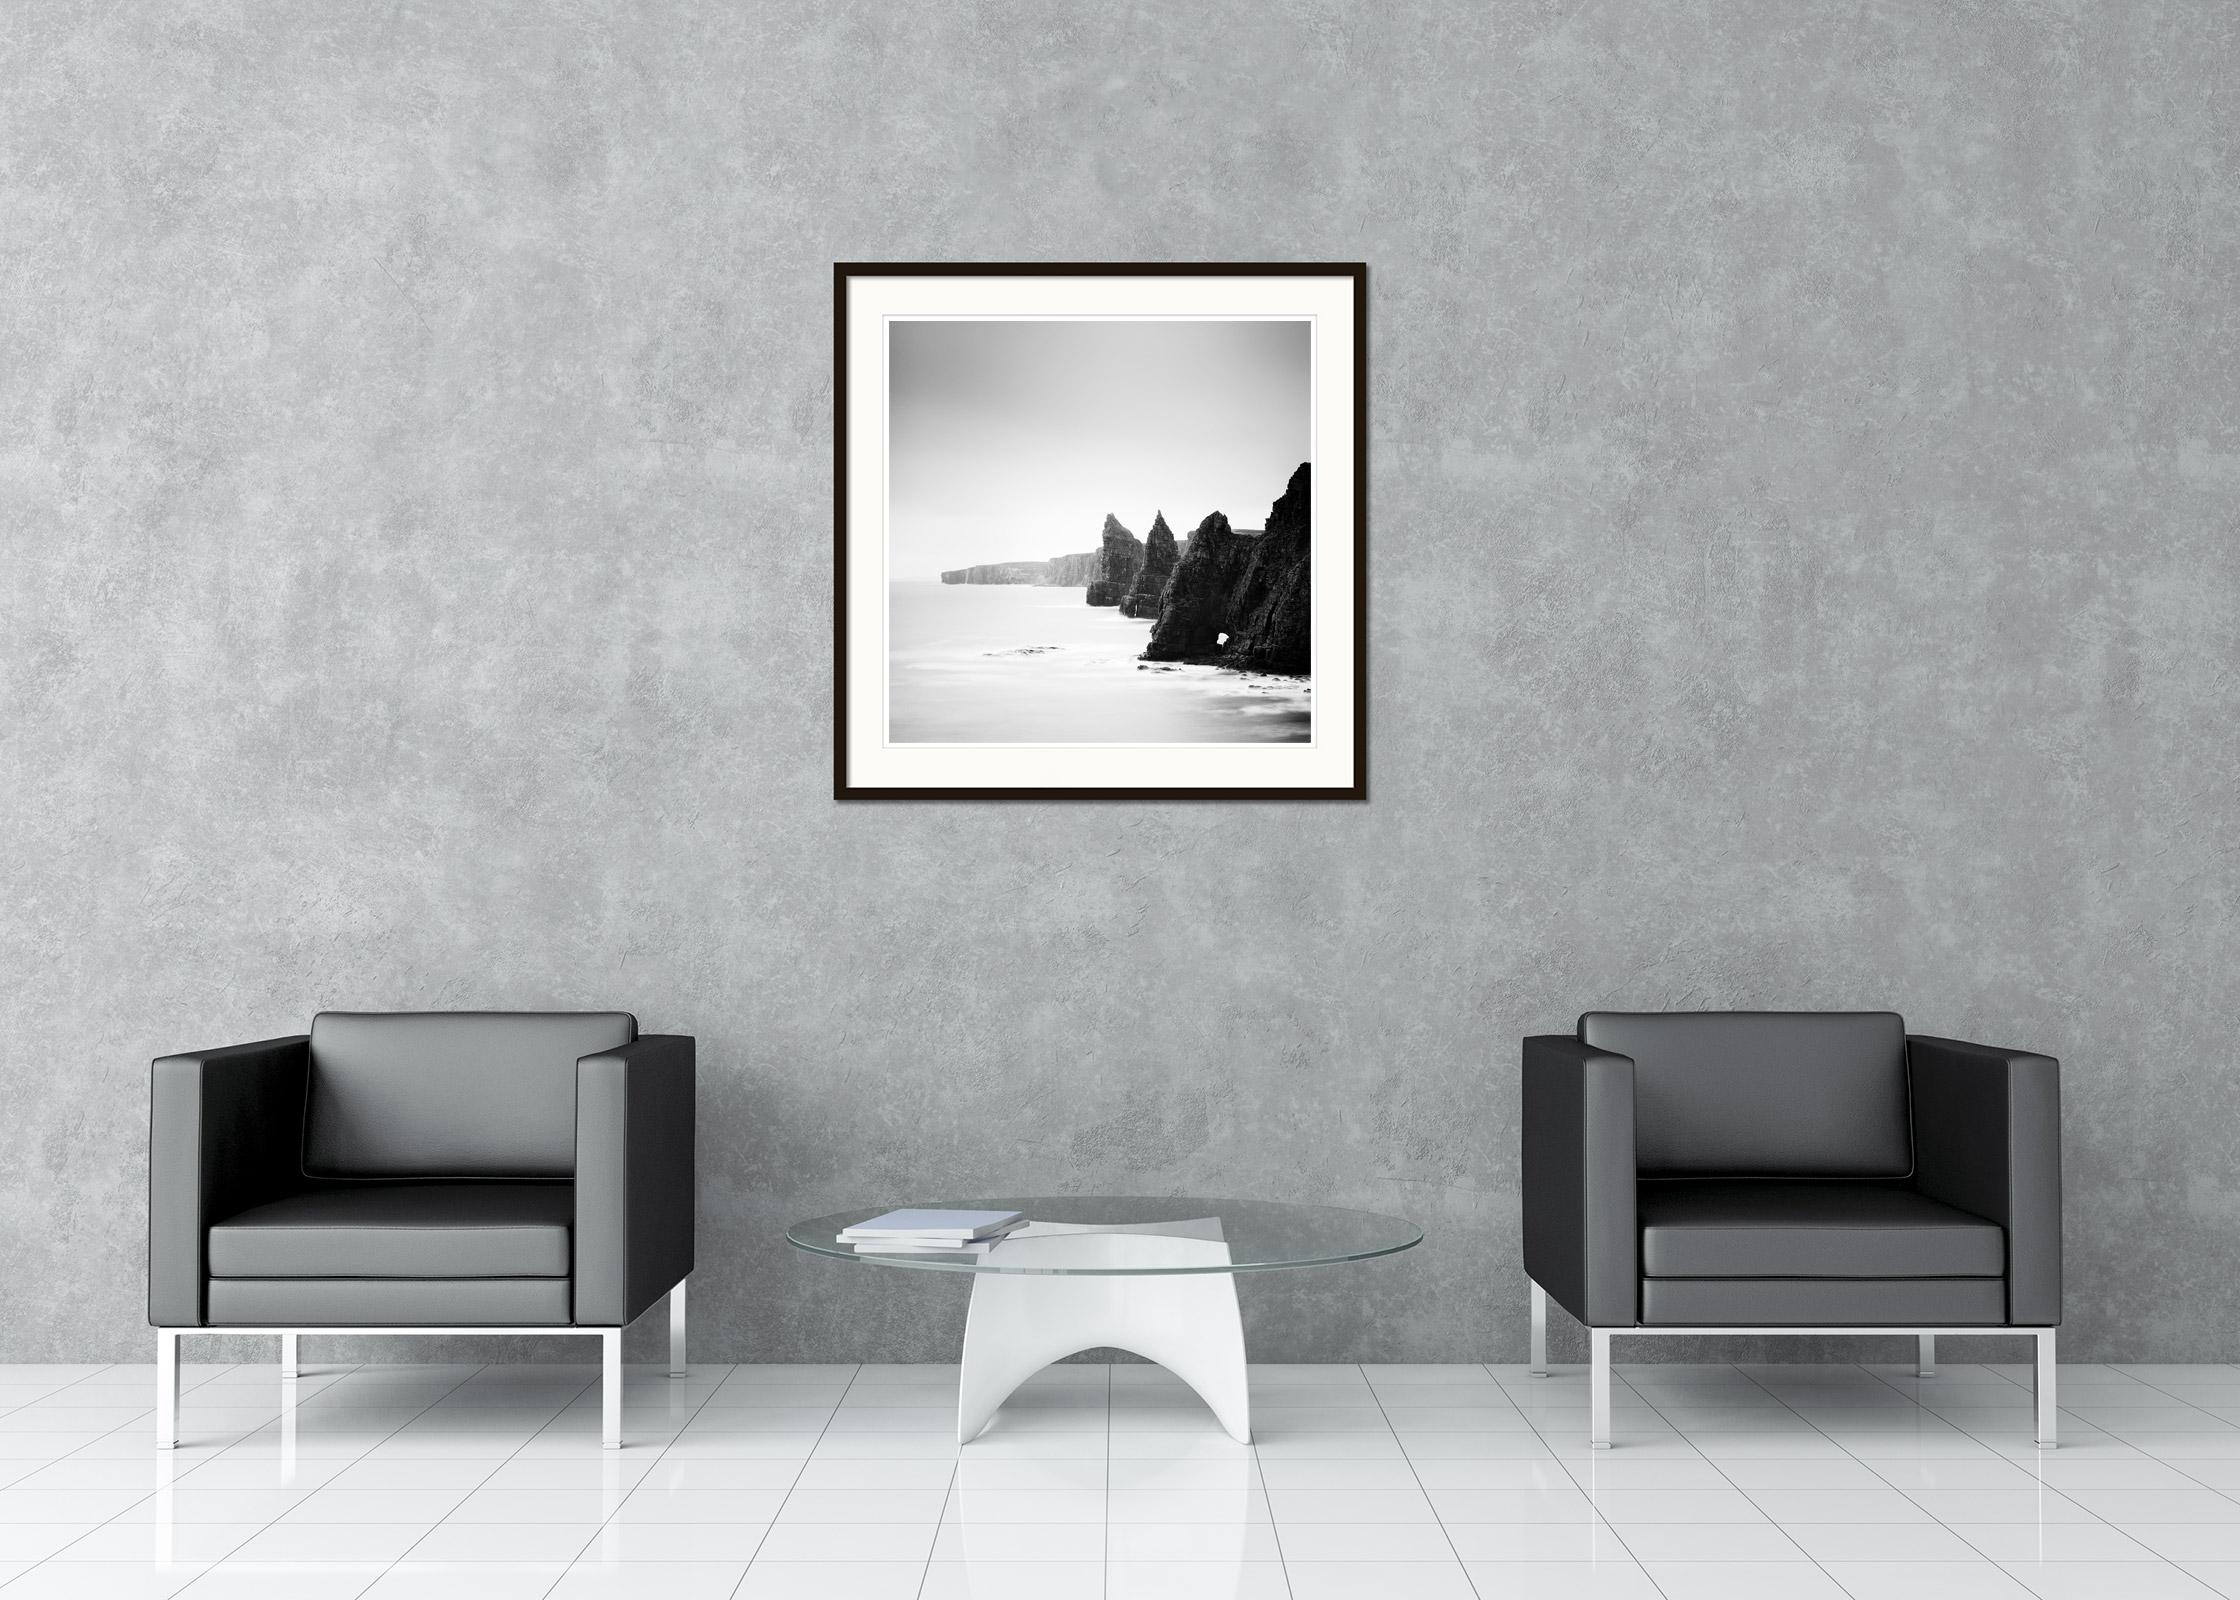 Black and White Fine Art Landschaftsfotografie - Duncansby Stacks - Schottlands wilde Küsten mit den einzigartigen Klippen. Pigmenttintendruck, Auflage 9, signiert, betitelt, datiert und nummeriert vom Künstler. Mit Echtheitszertifikat. Bedruckt mit